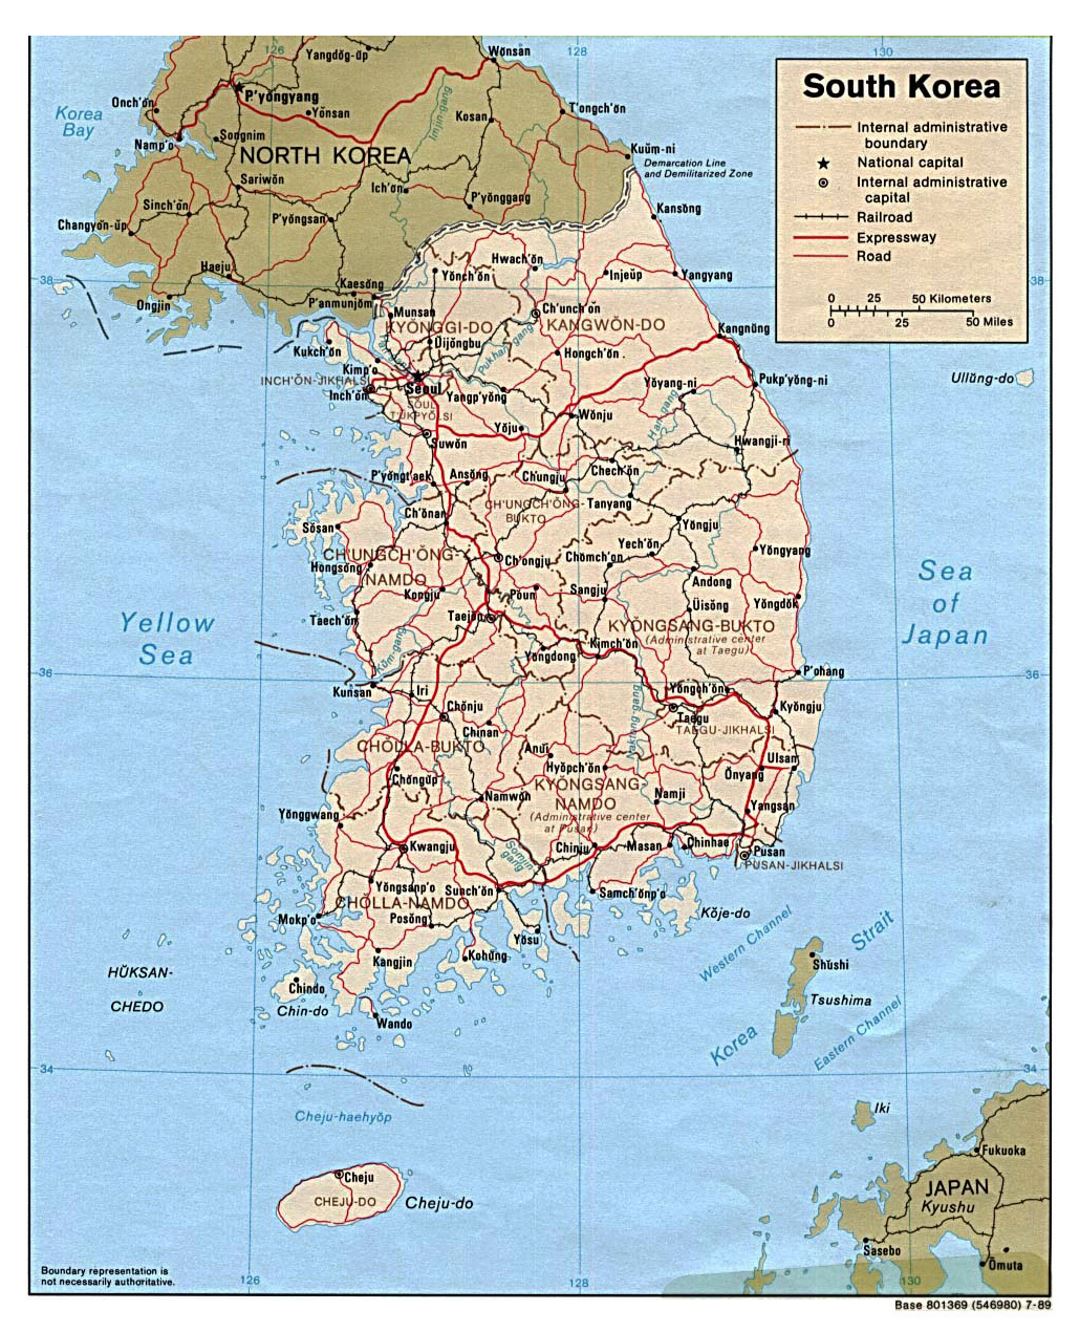 Detallado mapa político y administrativo de Corea del Sur con carreteras, ferrocarriles y principales ciudades - 1989